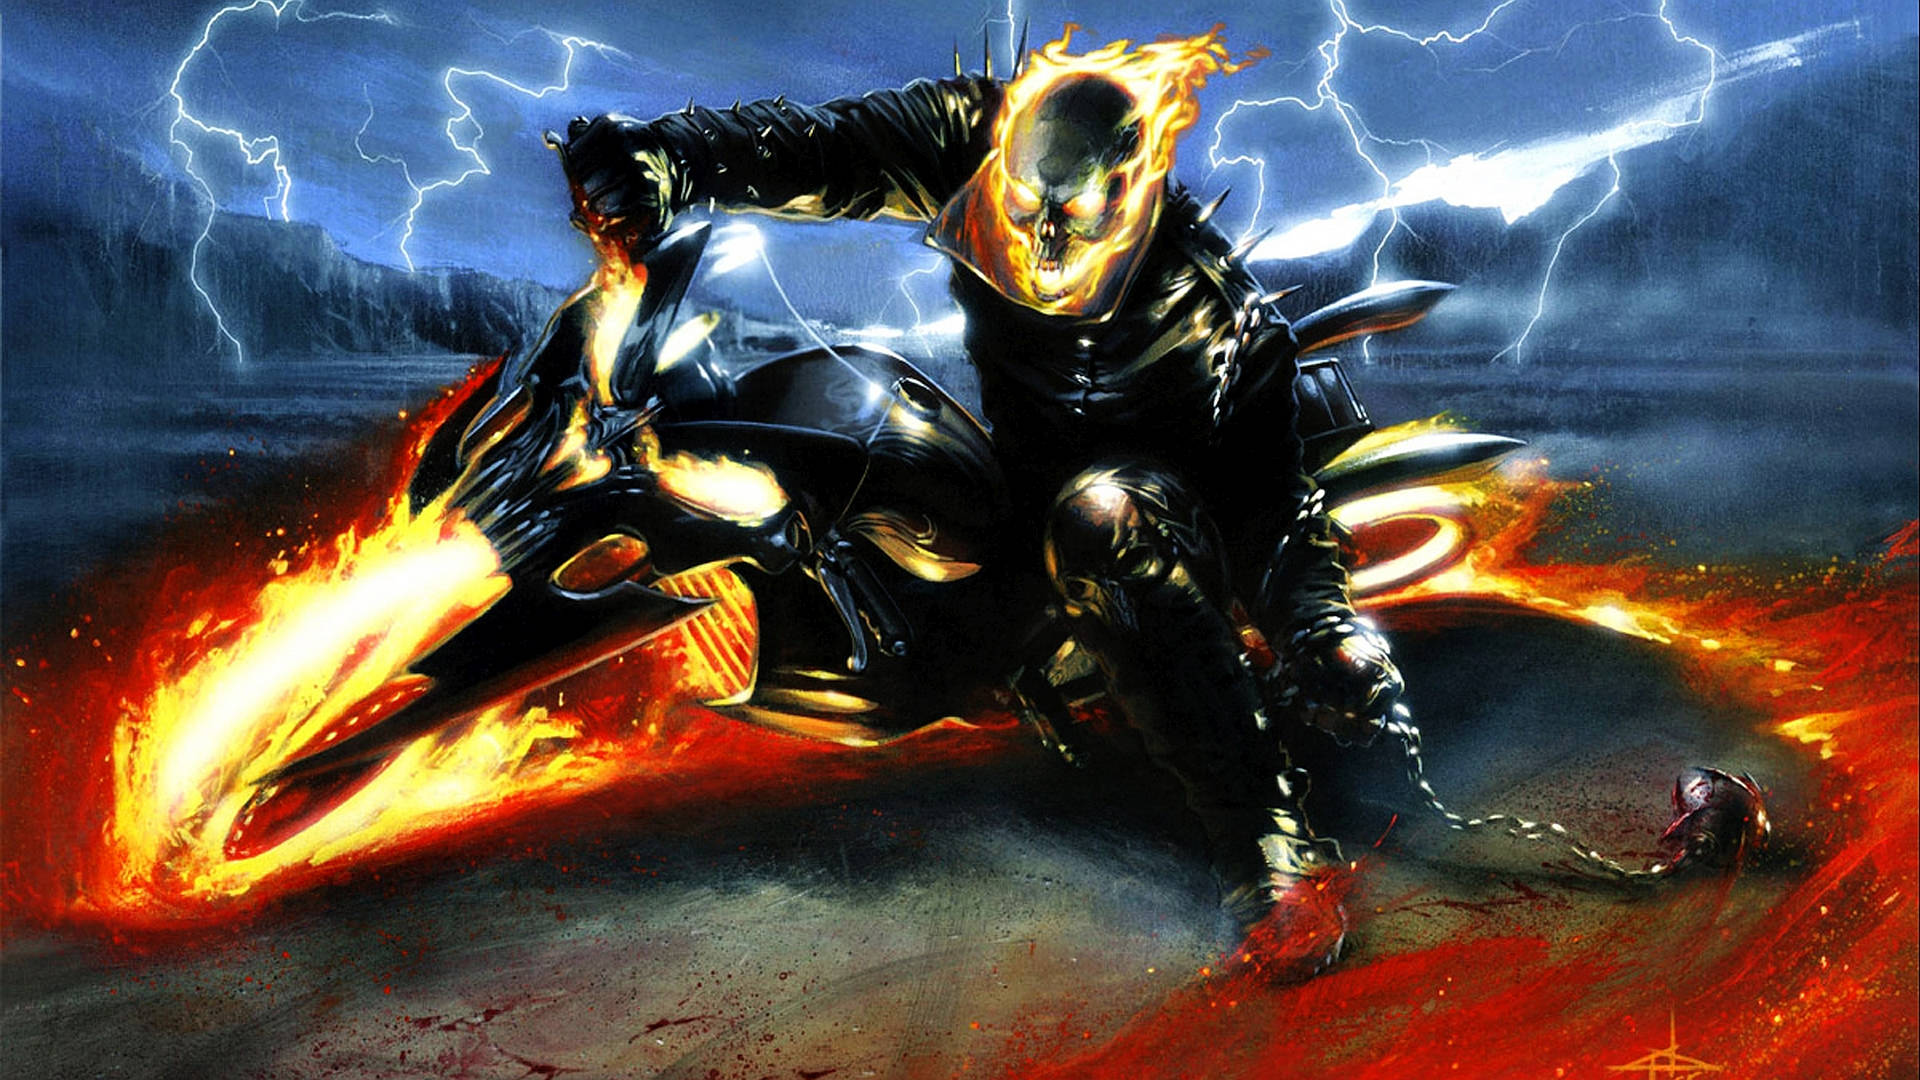 Leichterfahrer Motorrad Mit Flammen Wallpaper